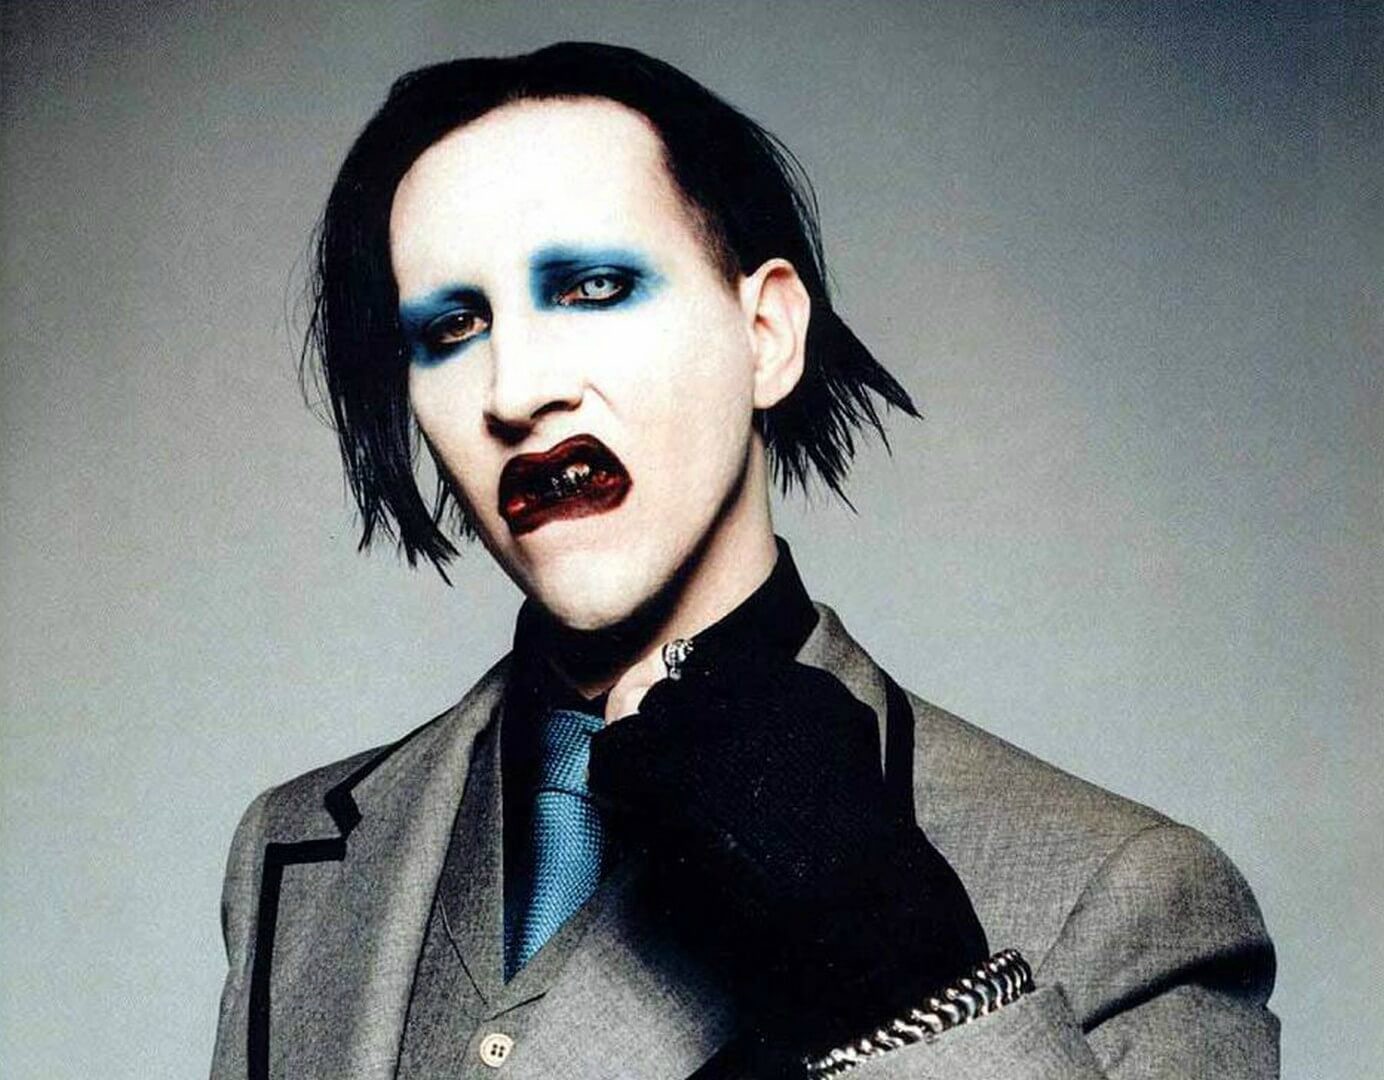 Arcképével díszített műpéniszt dobott piacra Marilyn Manson